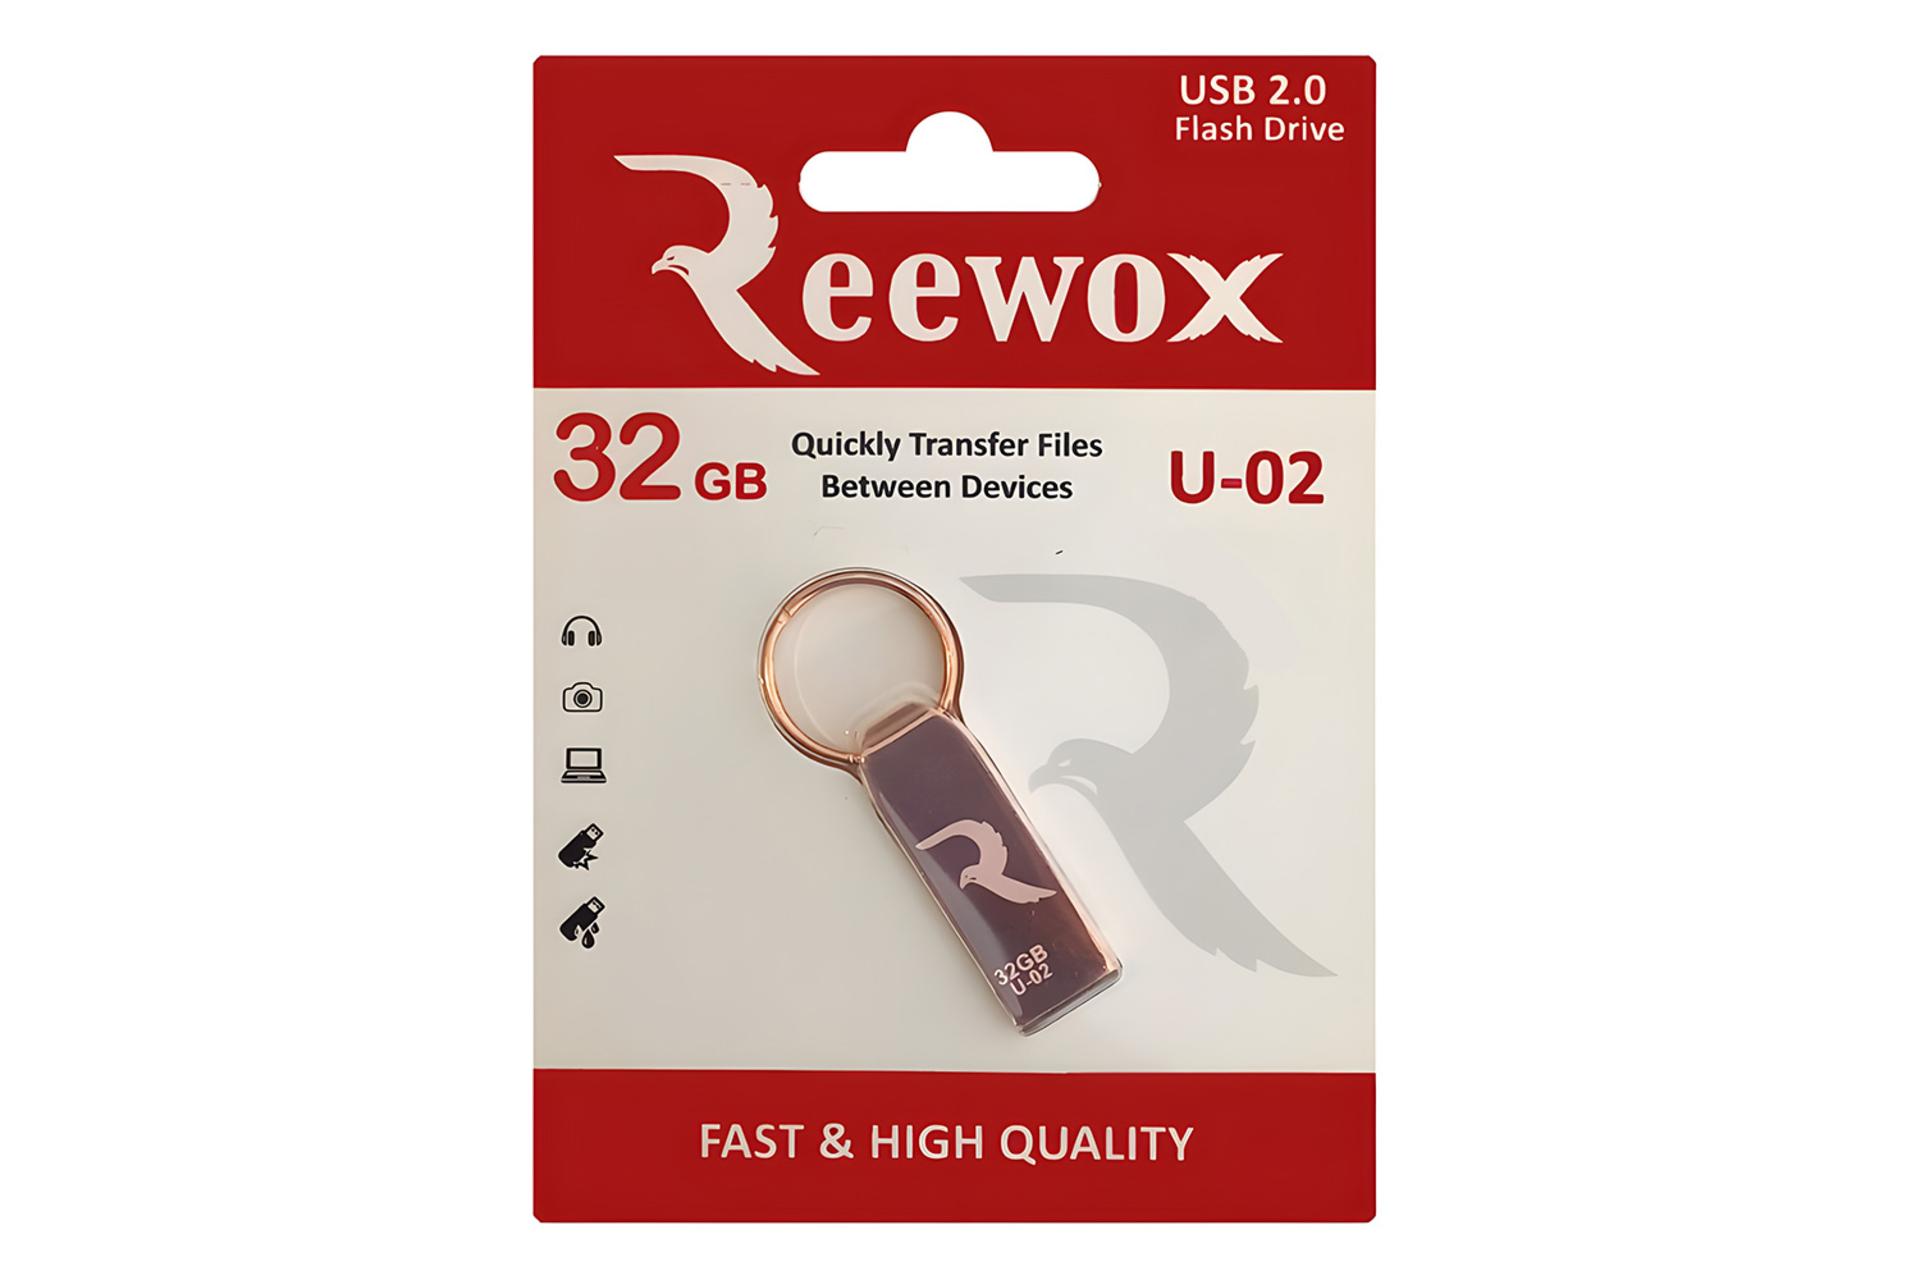 جعبه فلش مموری ریووکس Reewox U-02 32GB USB 2.0